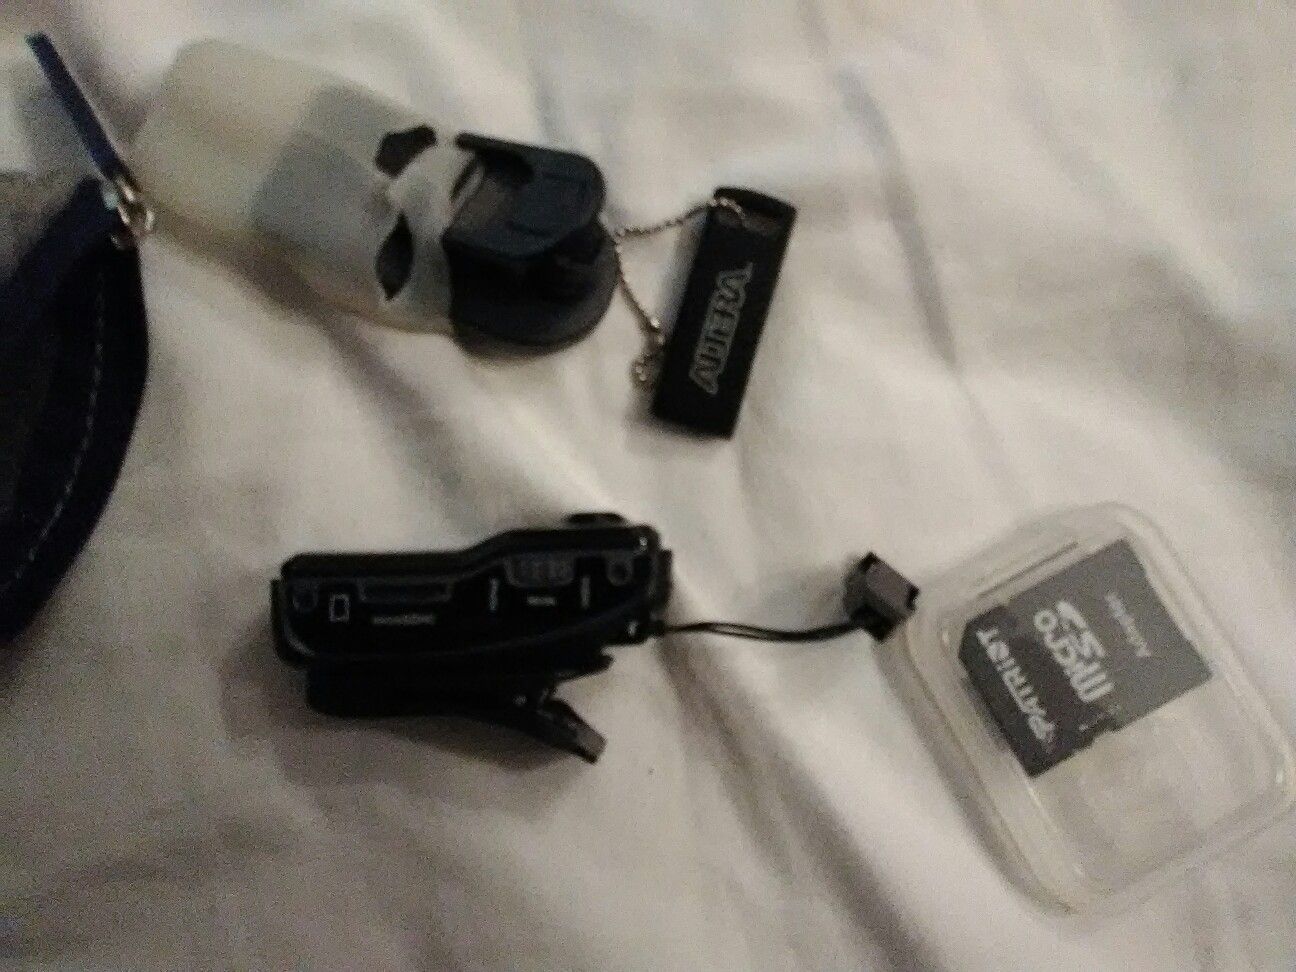 Camera mini body camera